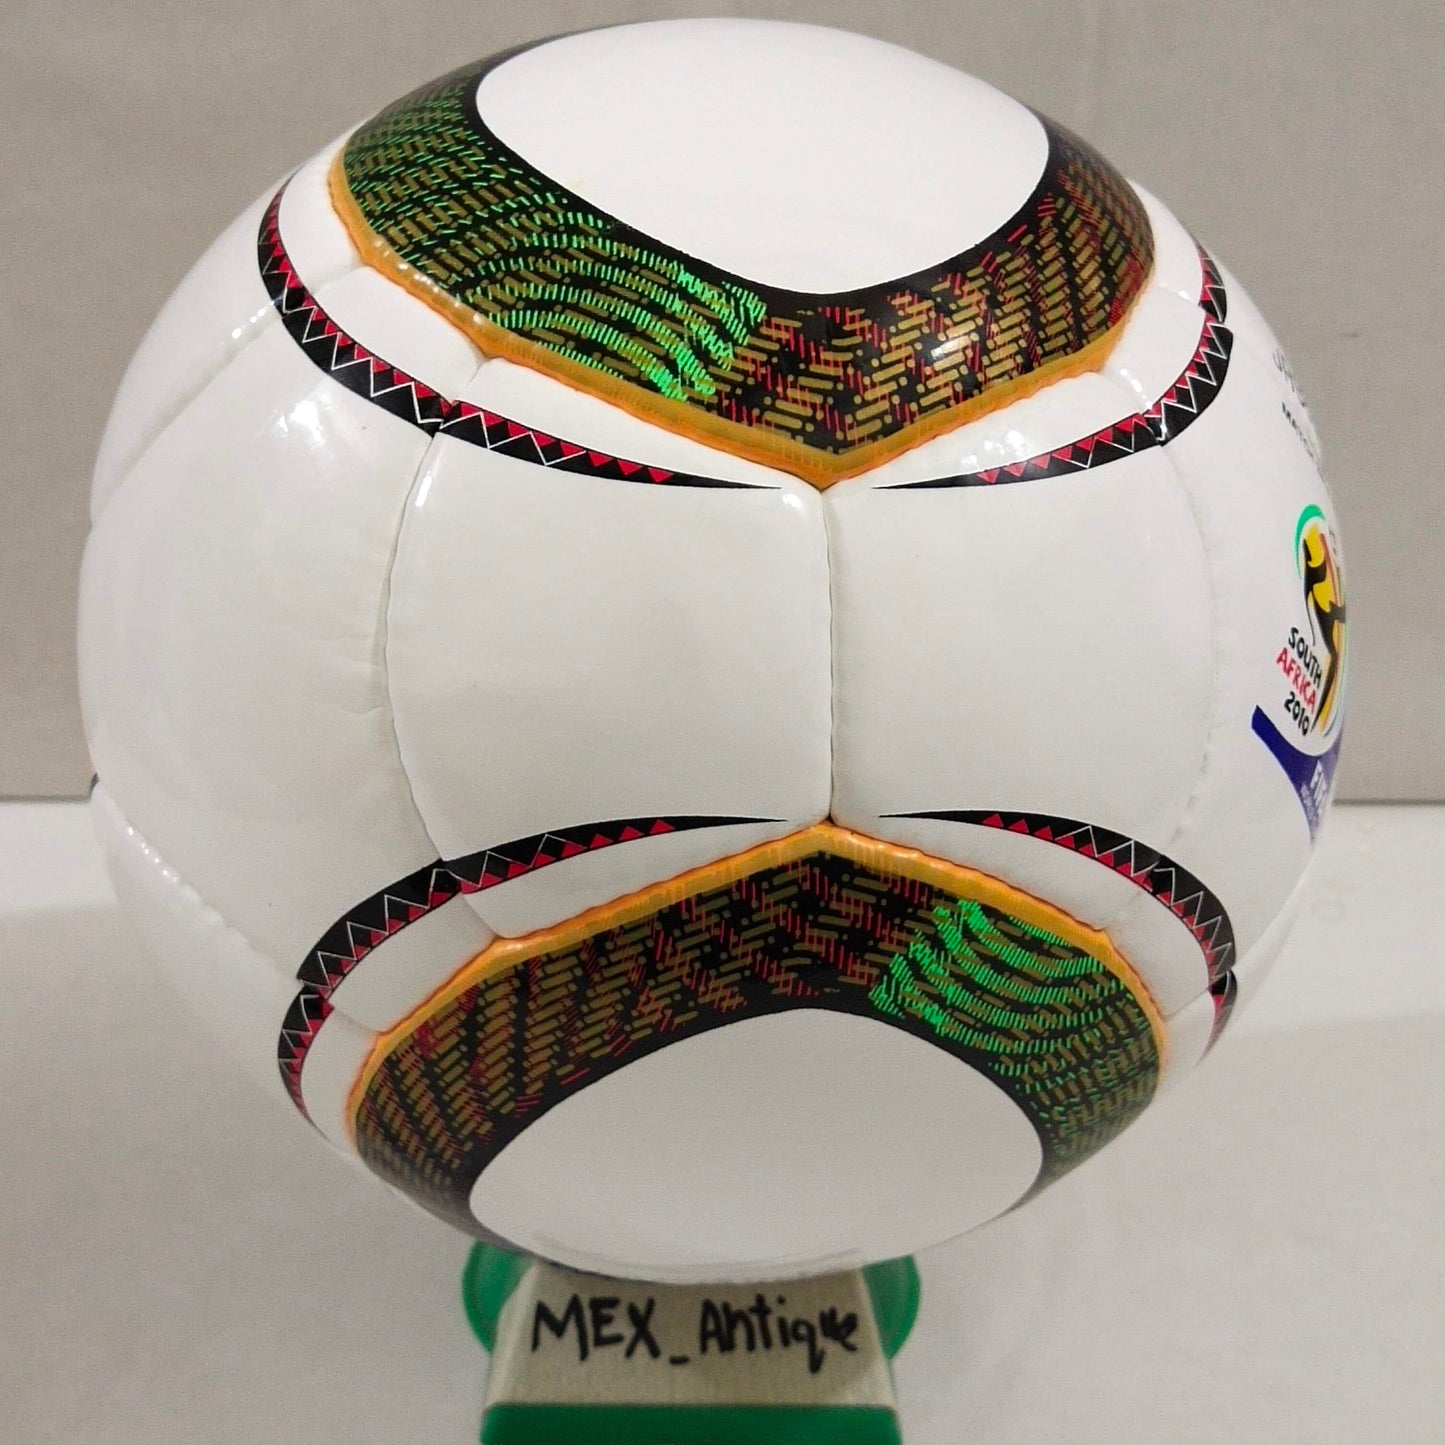 Adidas Jabulani Match Ball Glider | 2010 FIFA World Cup Ball | SIZE 5 05